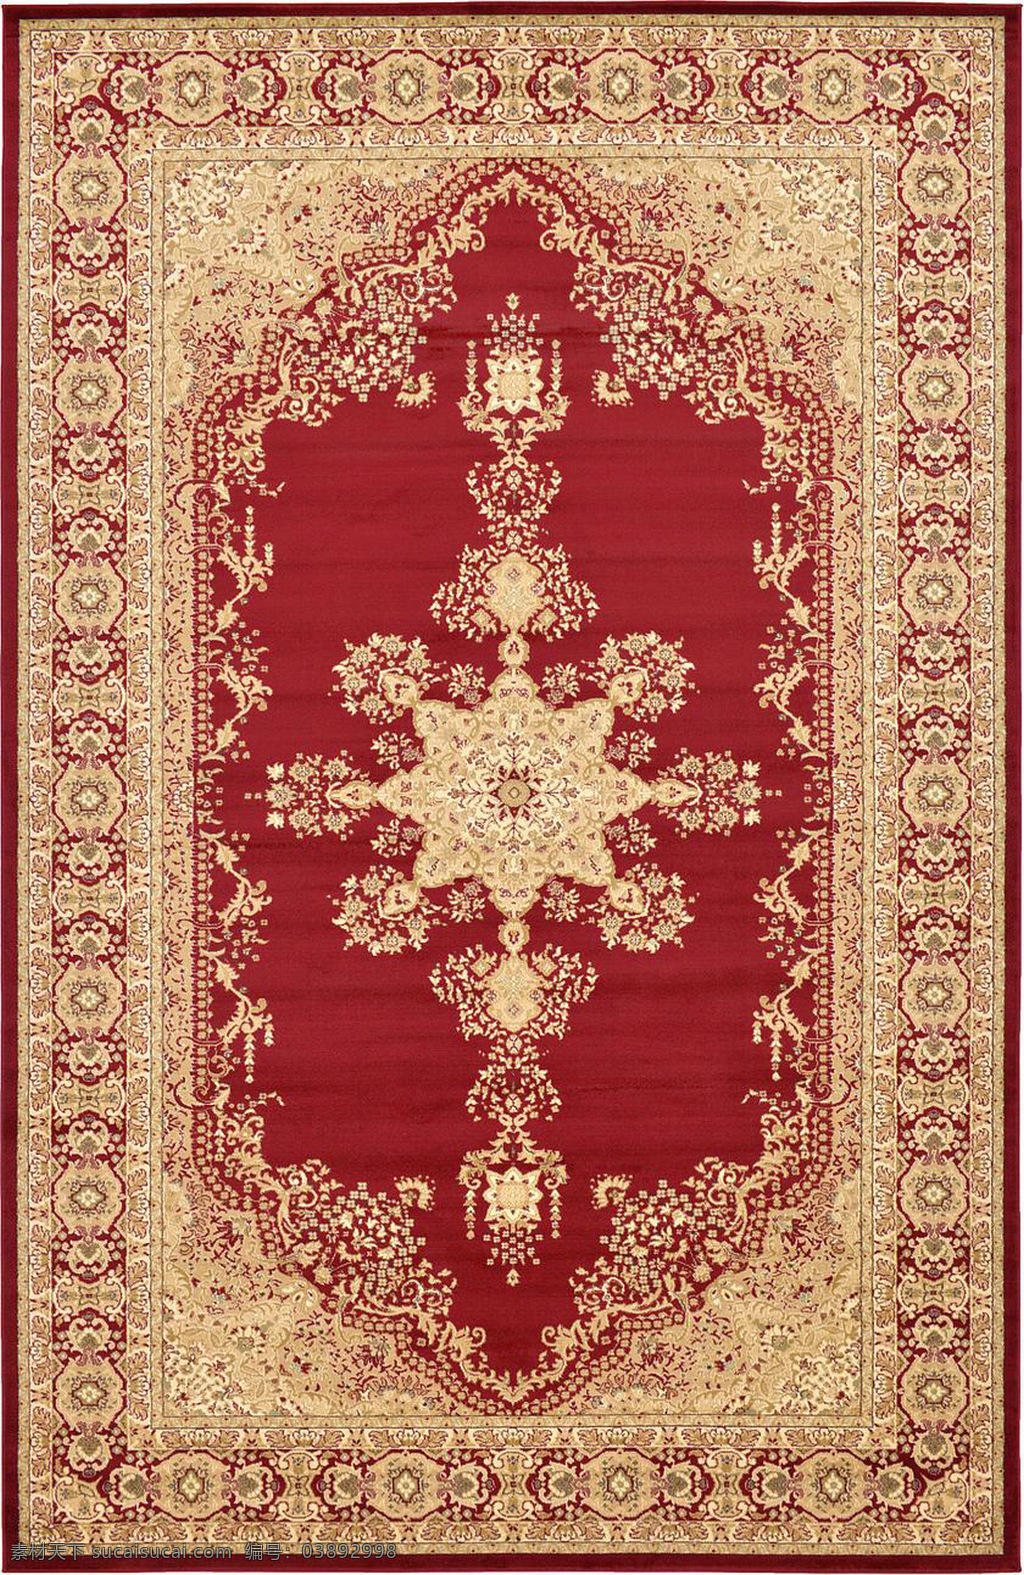 方形 古 红色 典 经典 地毯 图案 花边 花纹 底纹 边框 矩形 布料 布匹 欧洲风情